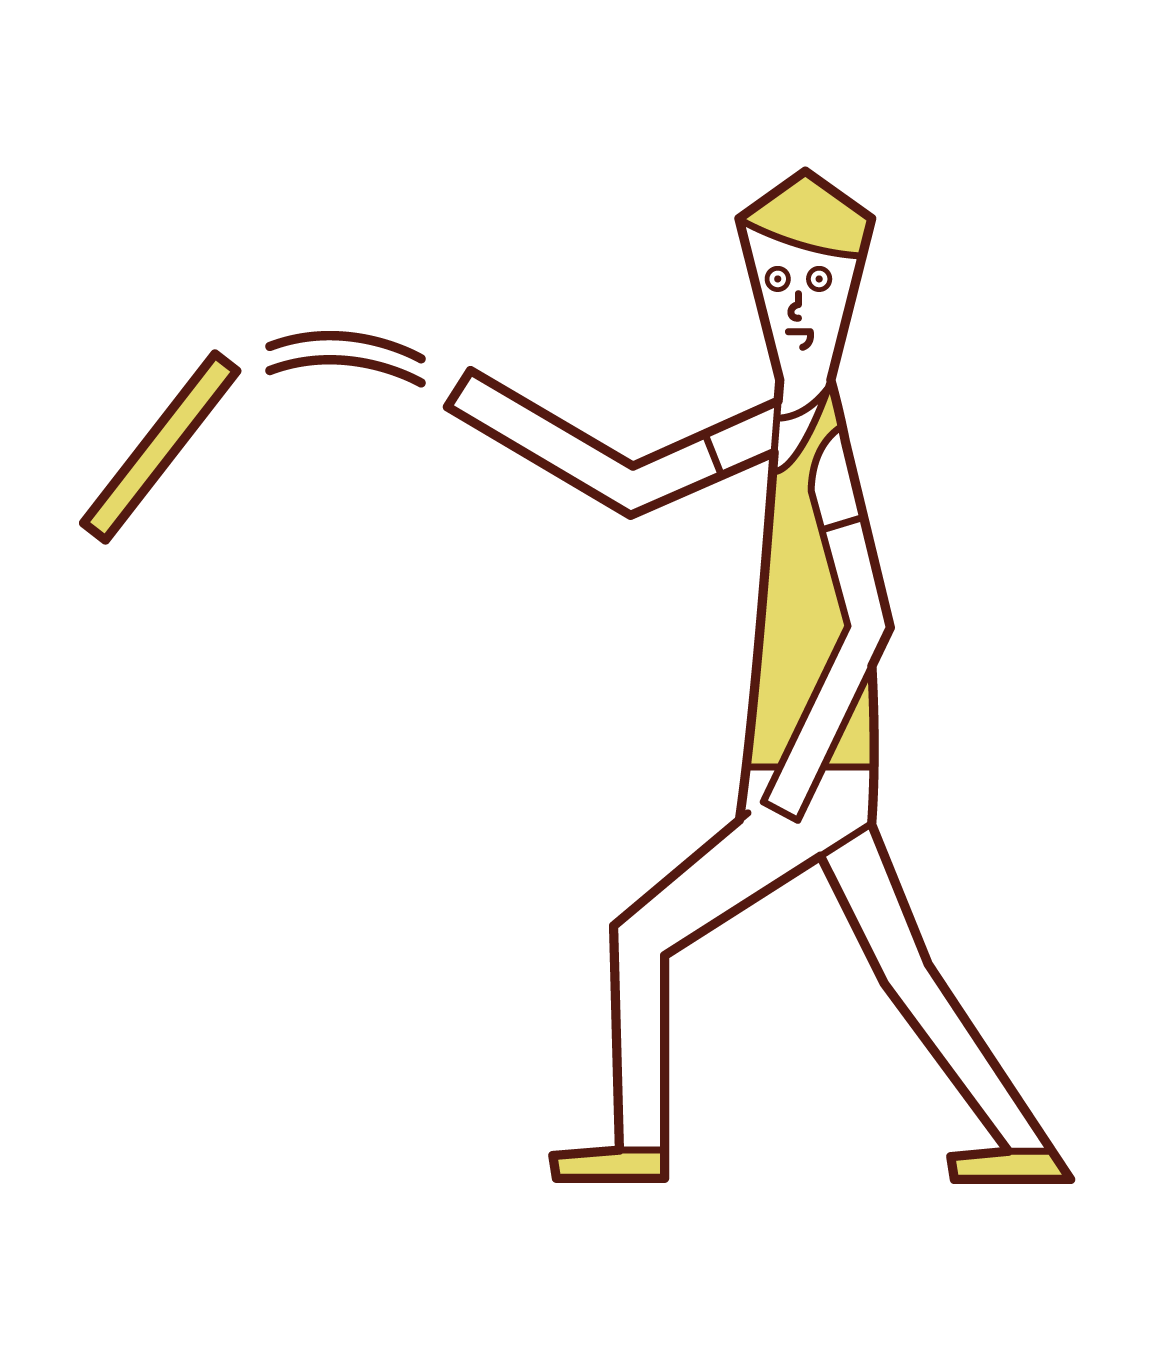 ロッドを投げる人 男性 のイラスト フリーイラスト素材 Kukukeke ククケケ